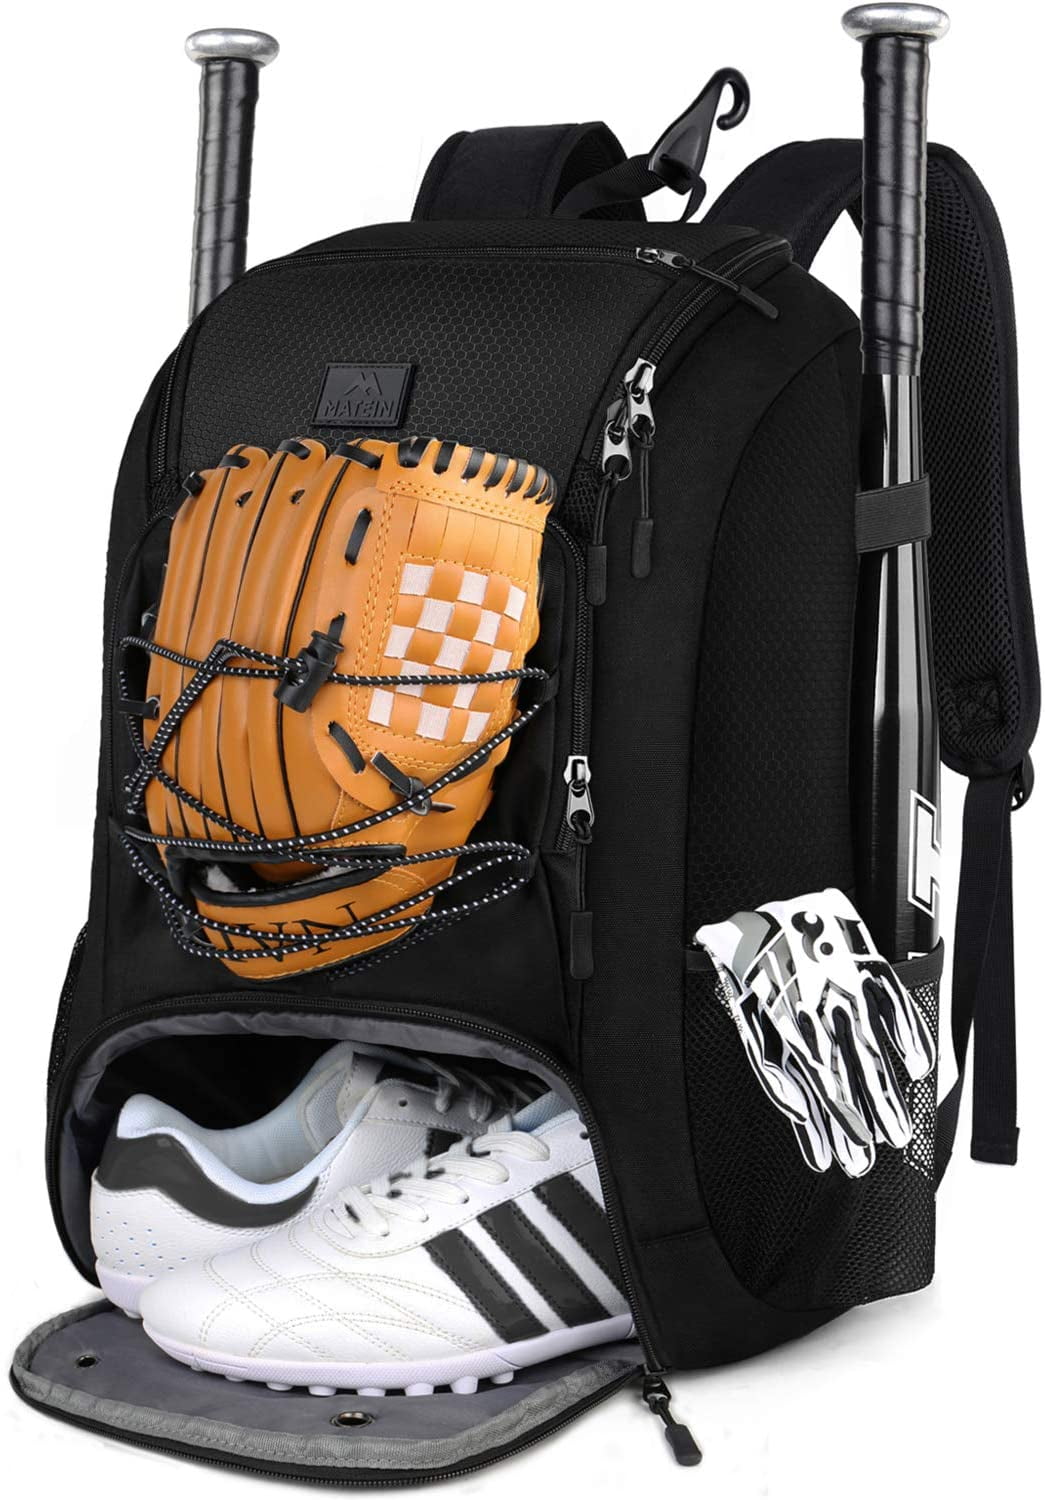 softball bag backpack